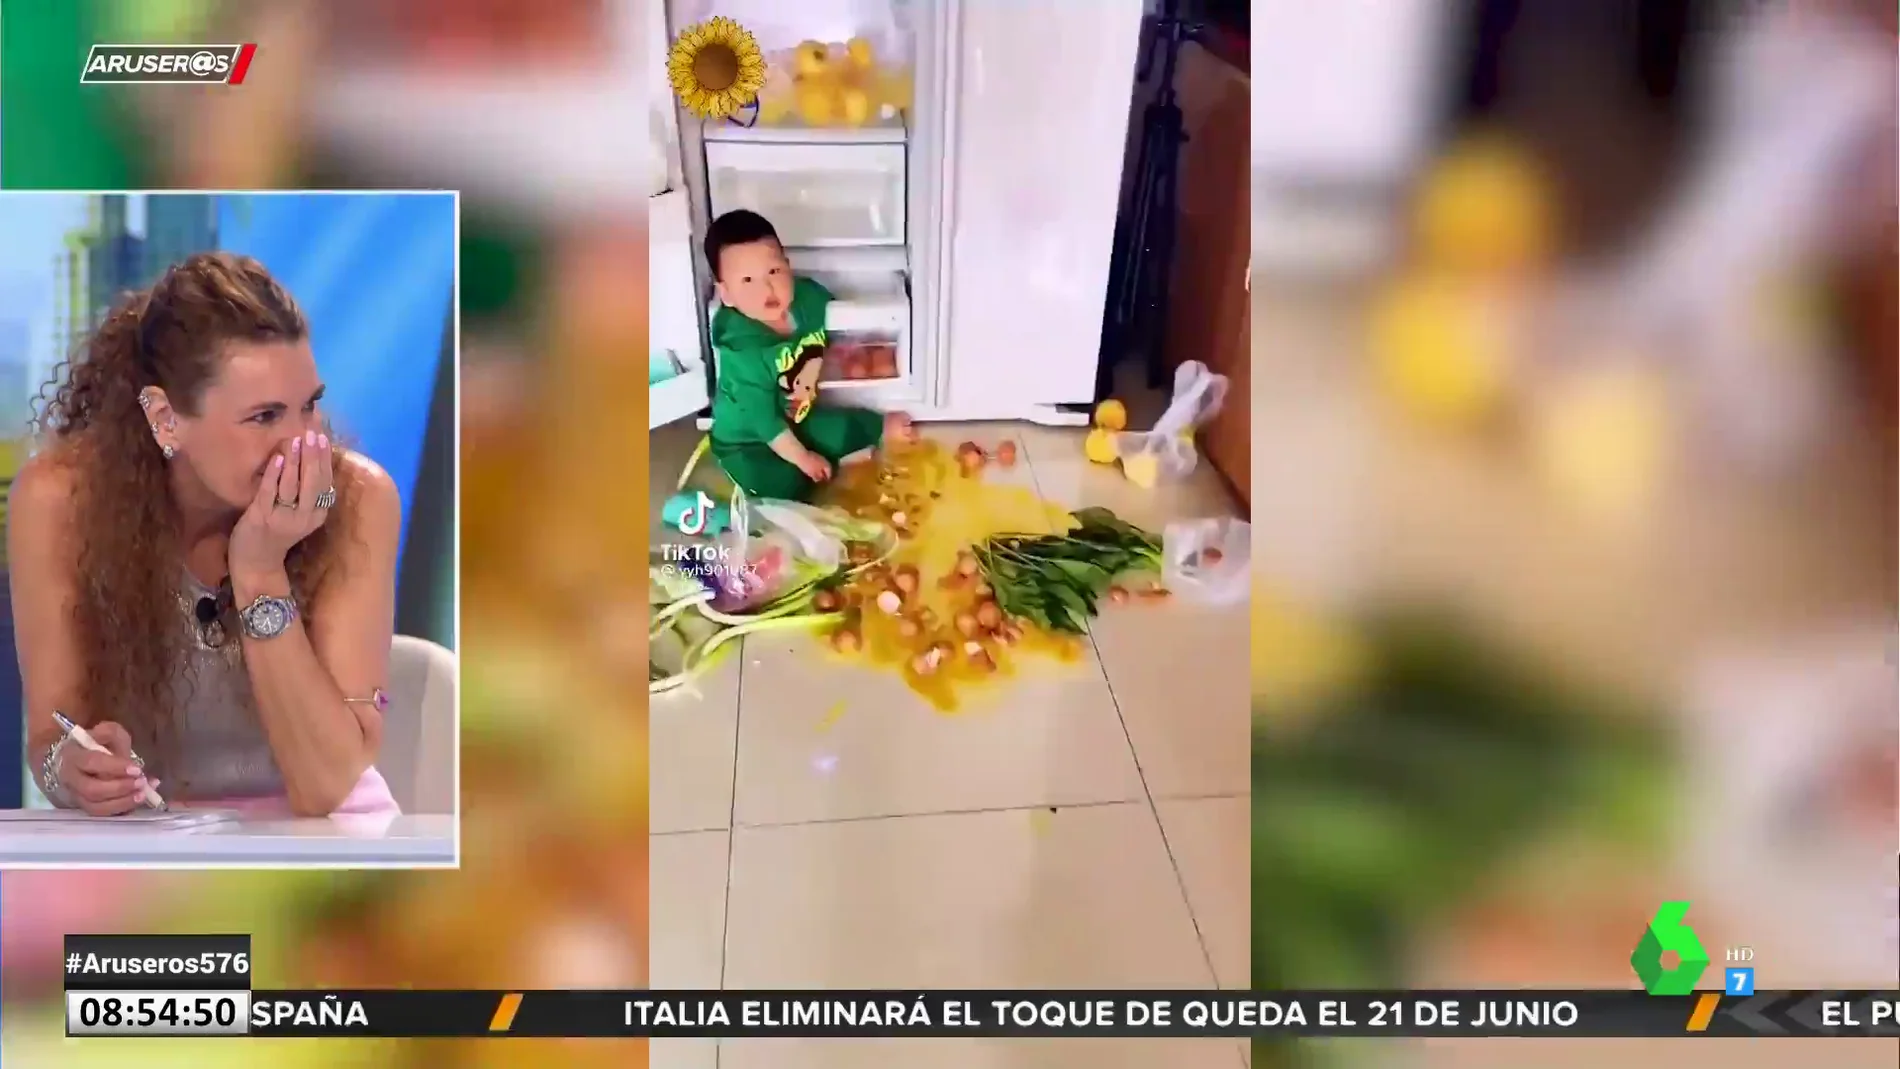 El vídeo que advierte del peligro de dejar a un niño pequeño solo en la cocina